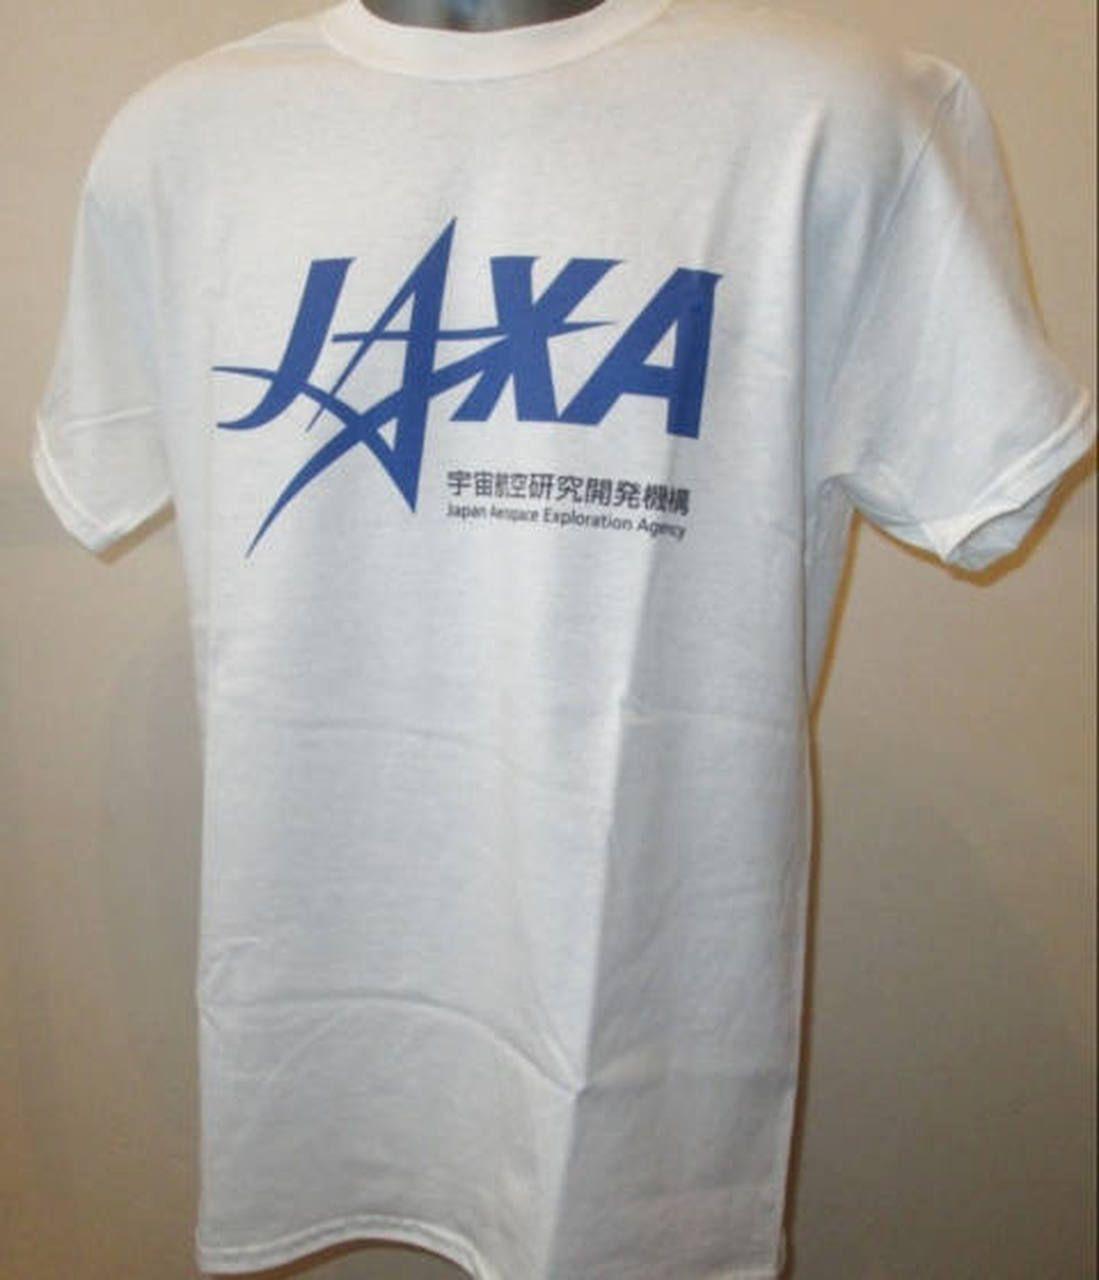 Jaxa Logo - JAXA Logo Printed T Shirt - Japan Aerospace Exploration Agency - New W Mens  Womens Tee